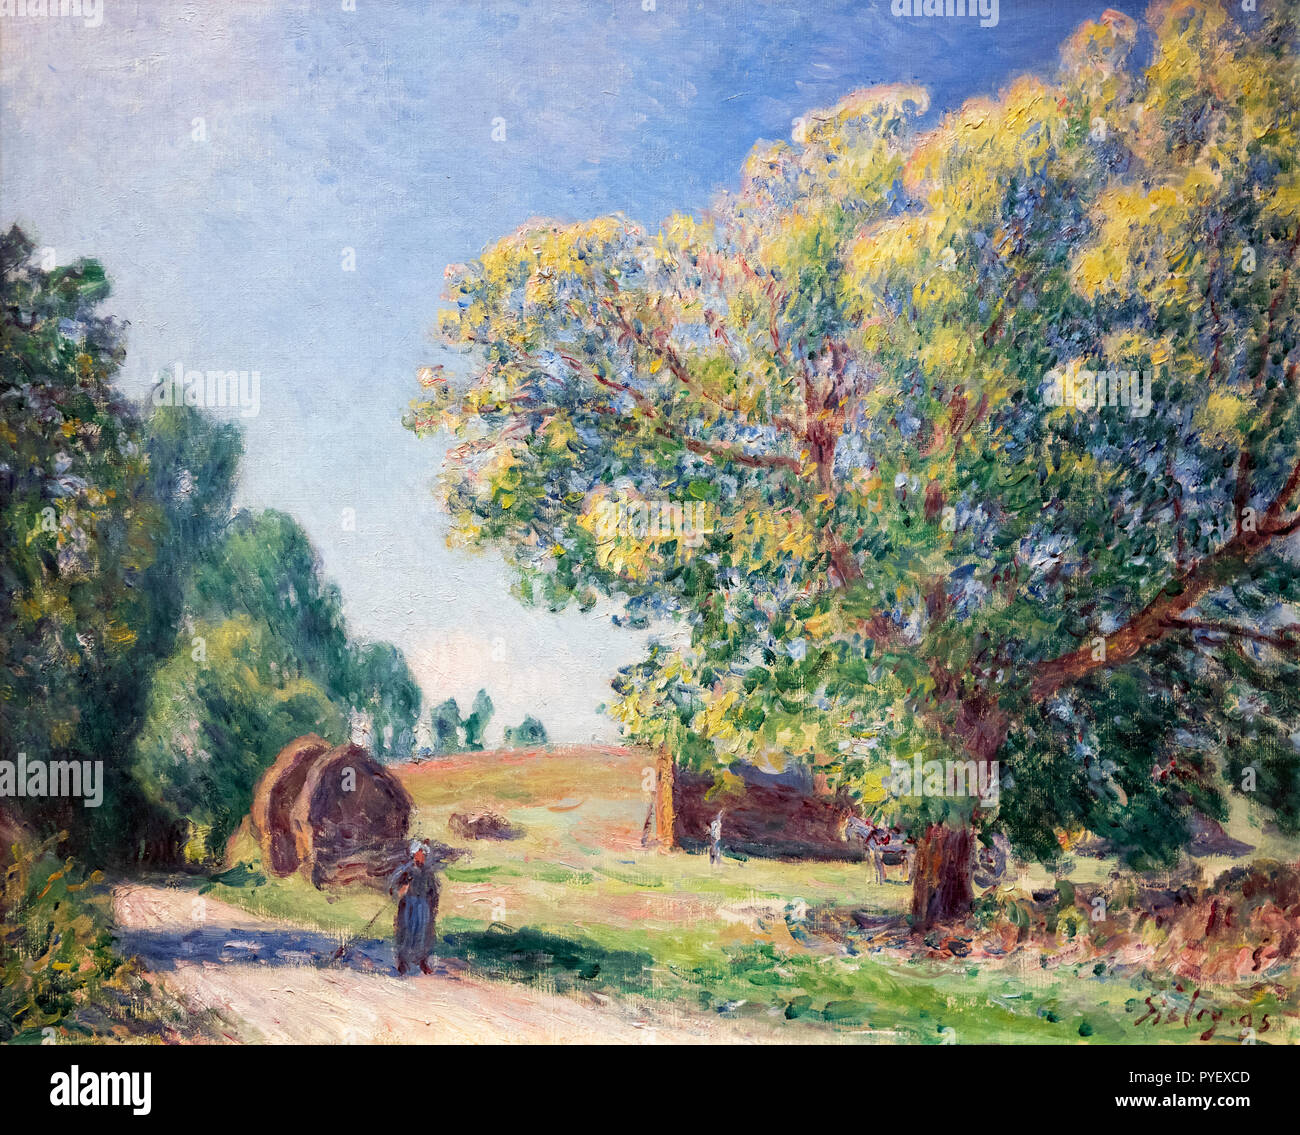 Une clairière dans la forêt par Alfred Sisley (1839-1899), huile sur toile, 1895 Banque D'Images